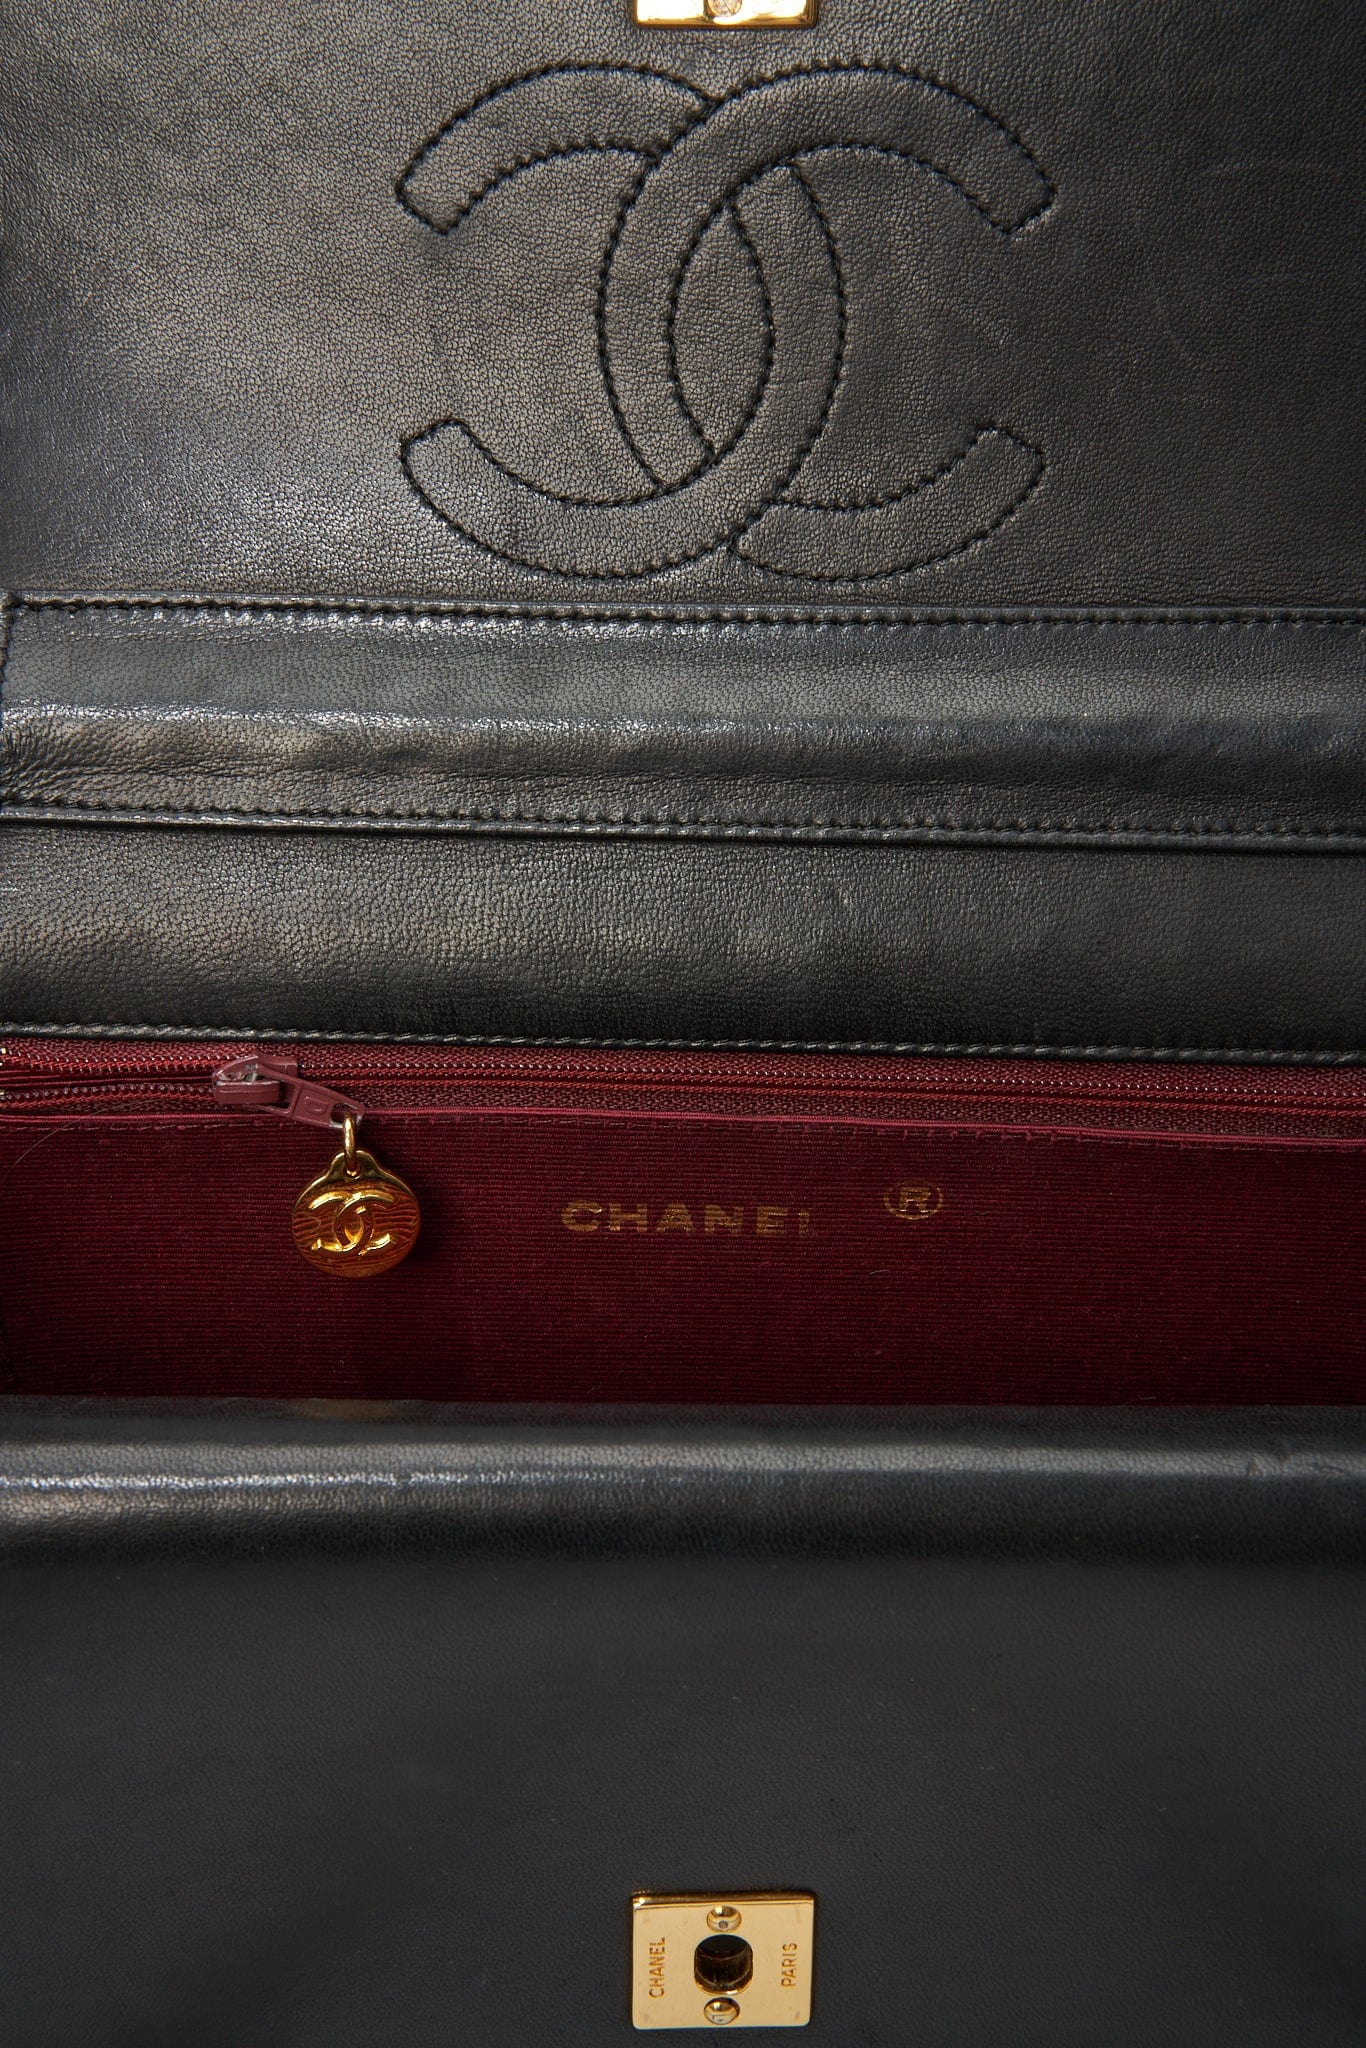 Vintage Chanel Black Leather Tote Bag – The Hosta